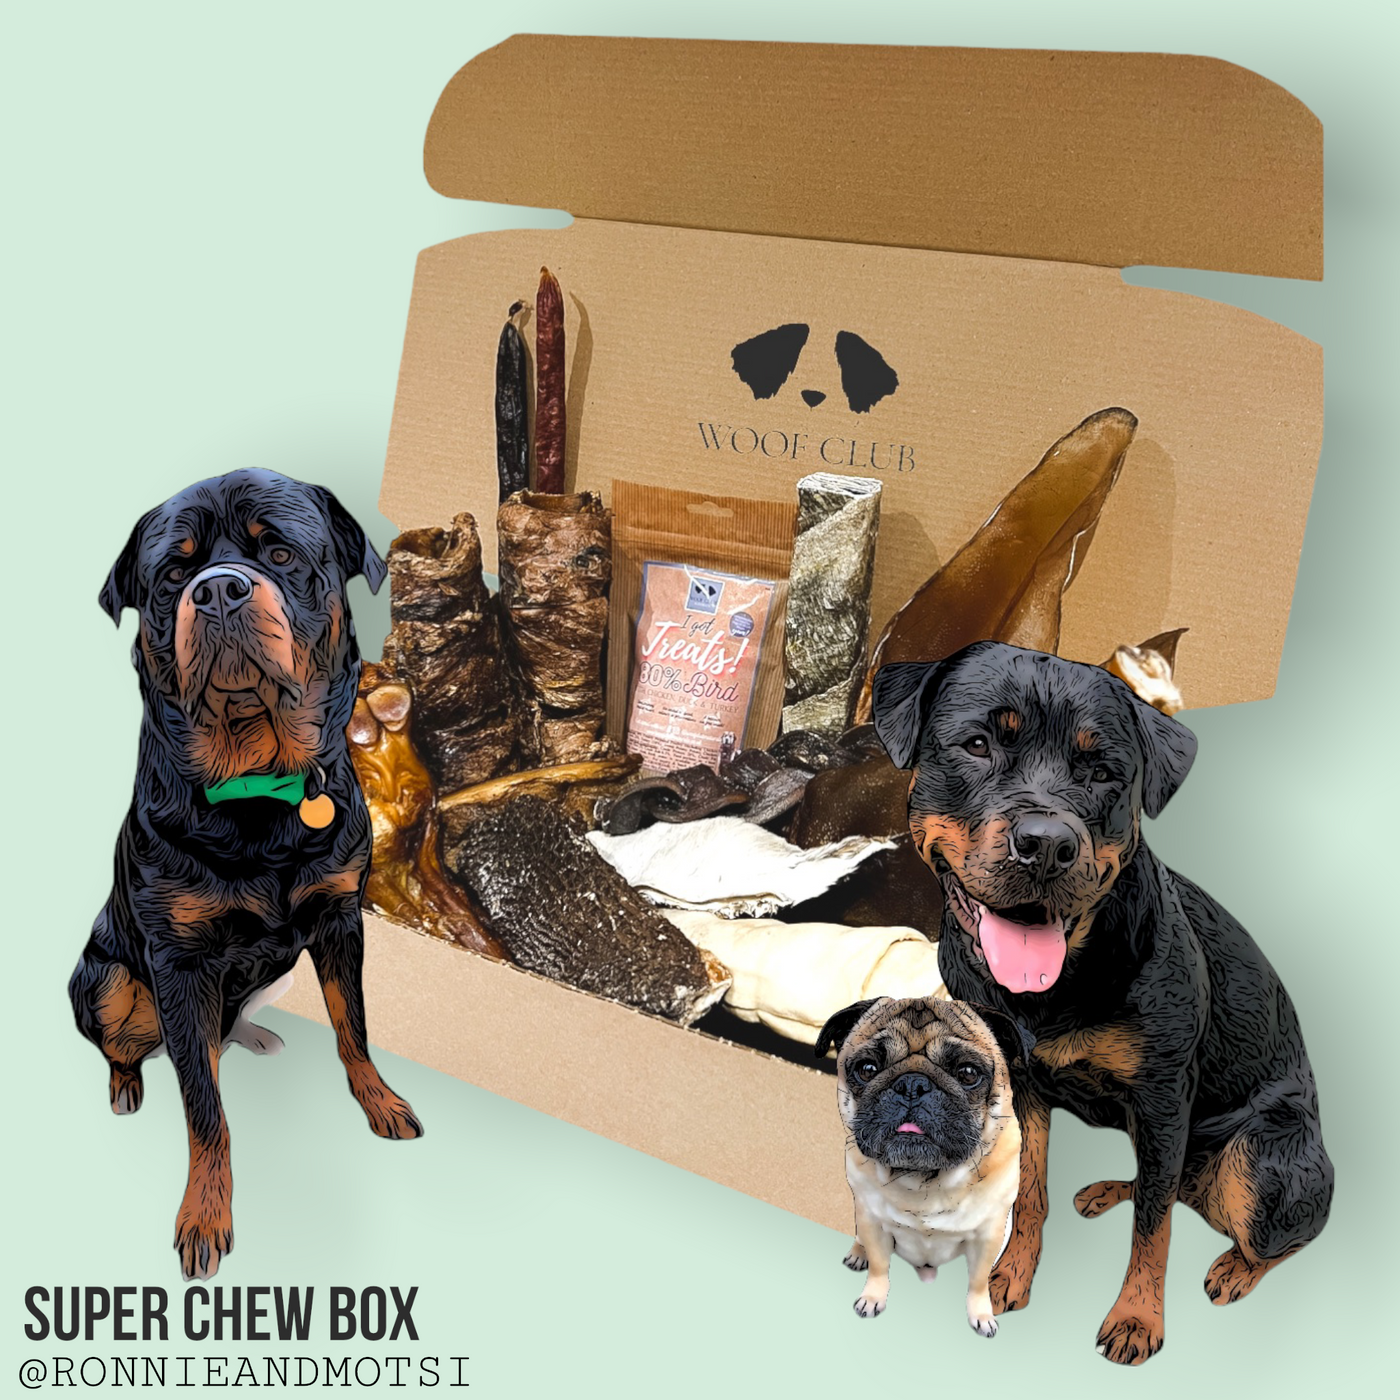 Super Chew Box by Ronnie & Motsi